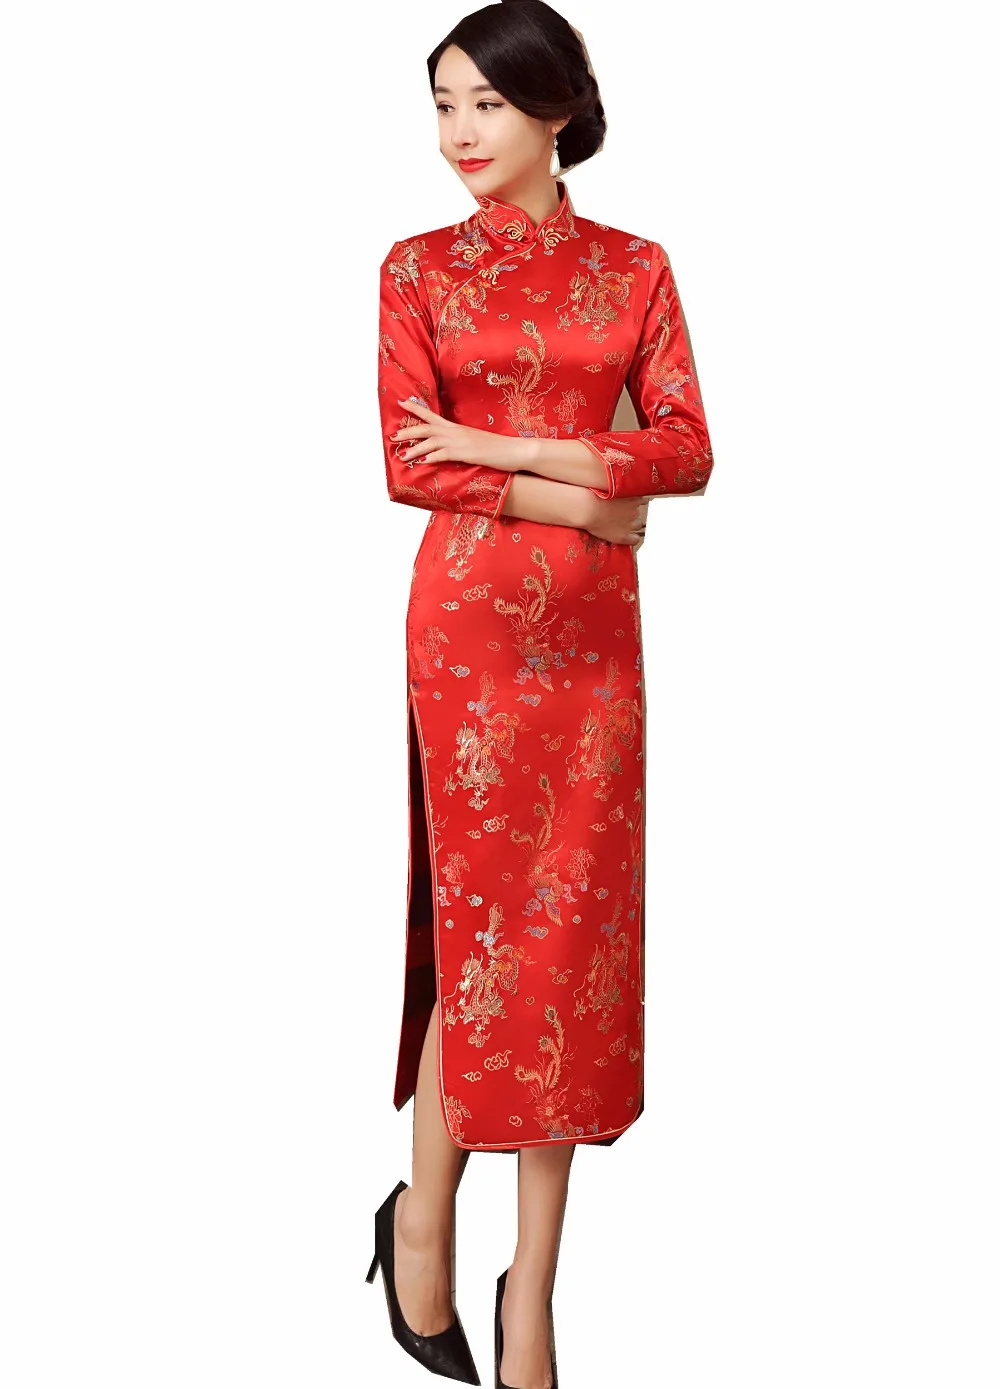 Shanghai Cerita gaya cina pakaian tradisional cina gaun